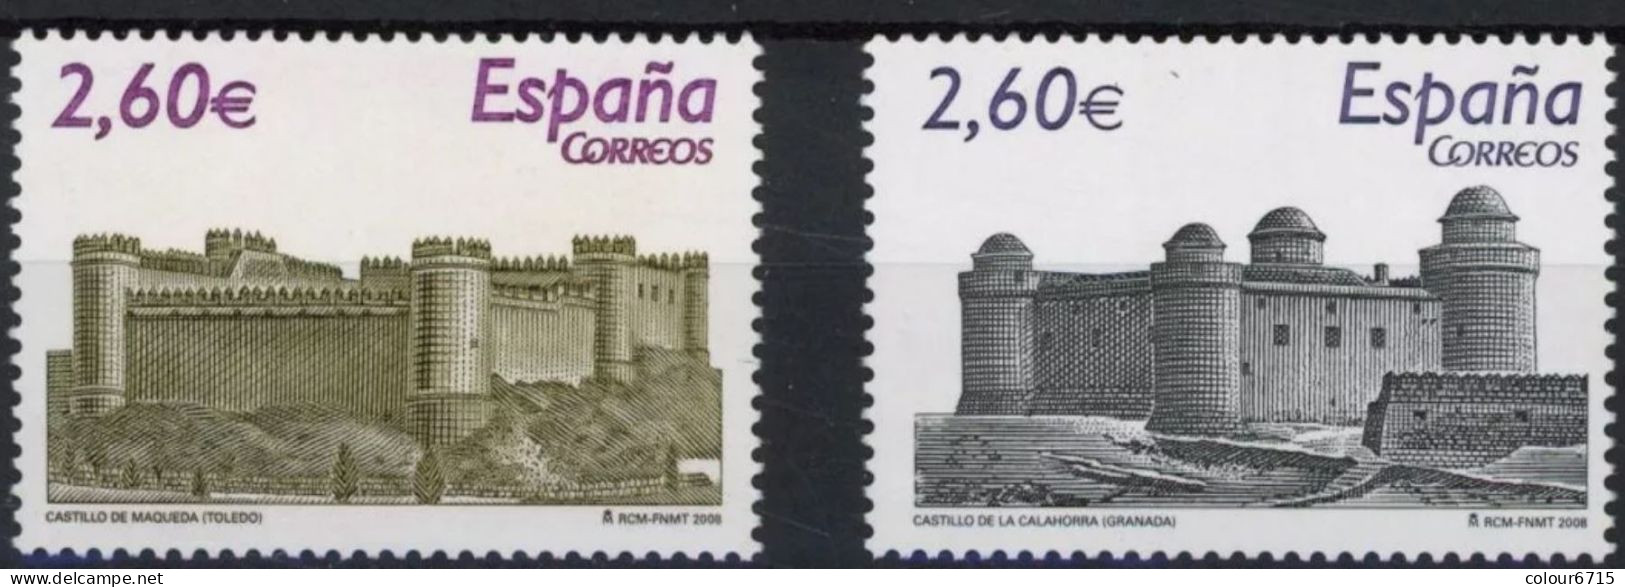 Spain 2008 Castles Stamps 2v MNH - Nuevos